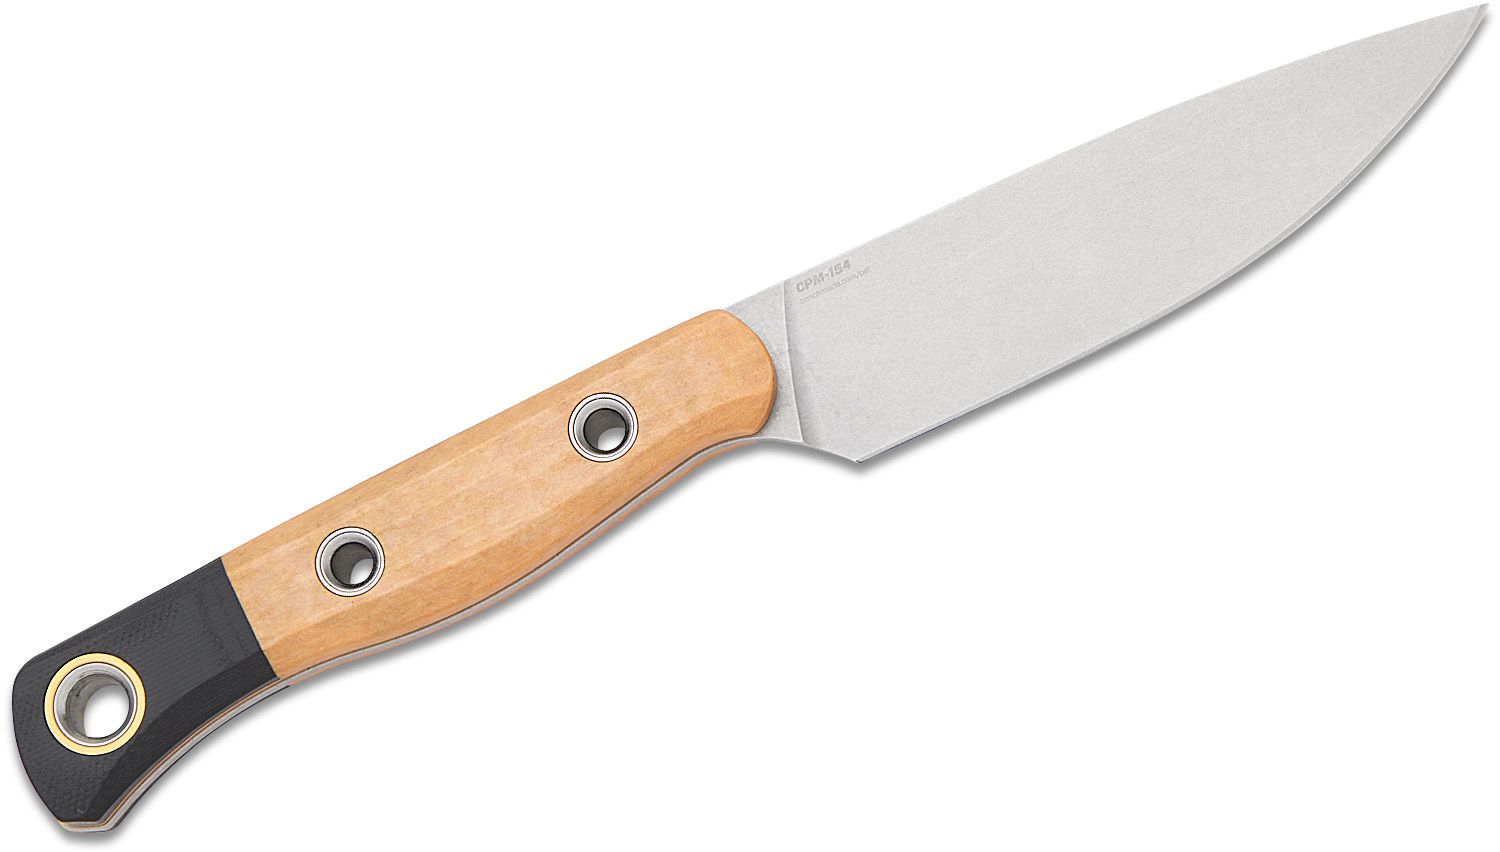 https://pics.knifecenter.com/knifecenter/benchmade-knives/images/BM400002_8.jpg